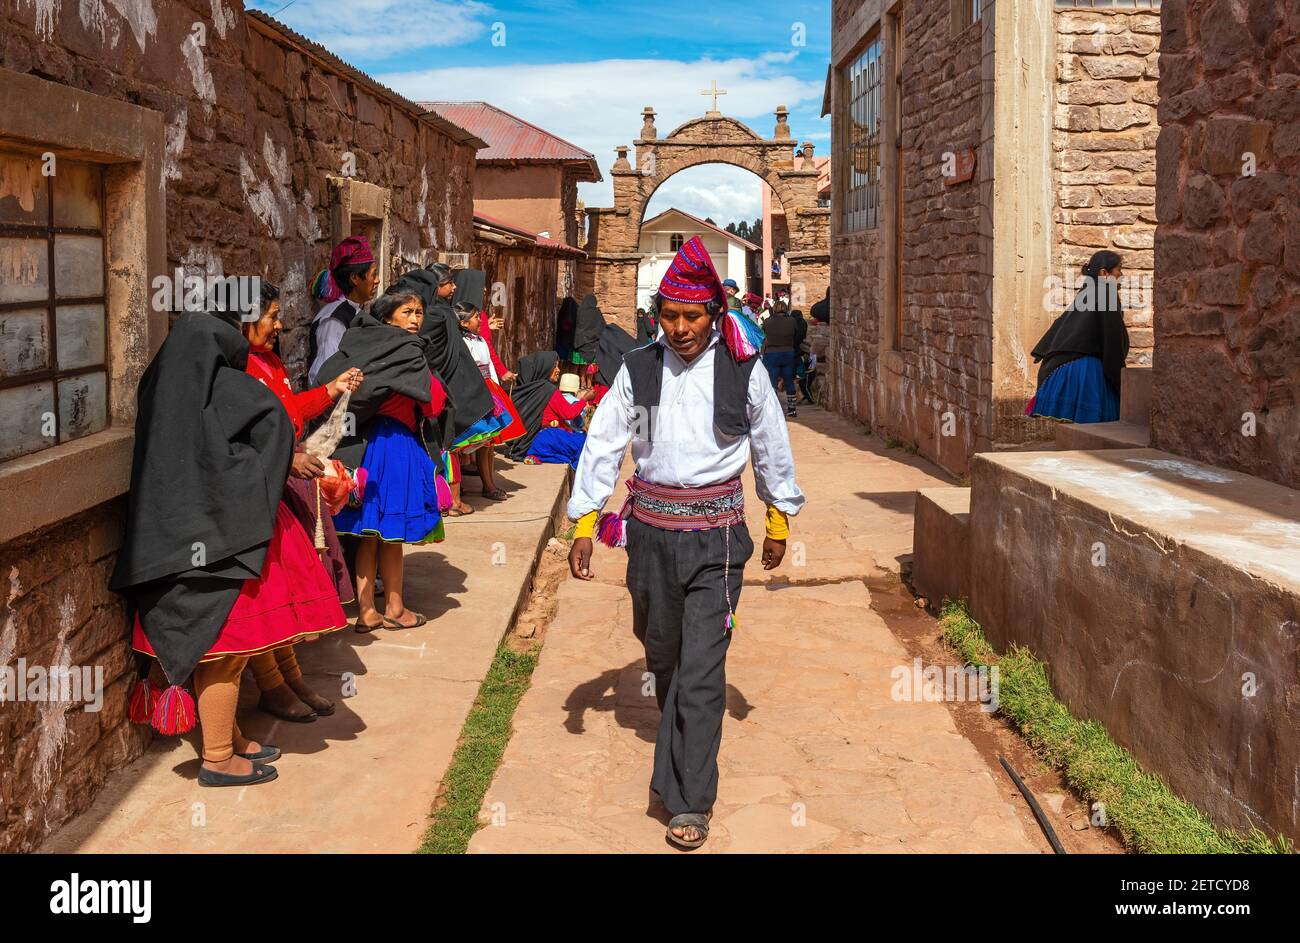 Indigeni peruviani Quechua gente in abiti tradizionali in una strada di Taquile isola, lago Titicaca, Perù. Foto Stock